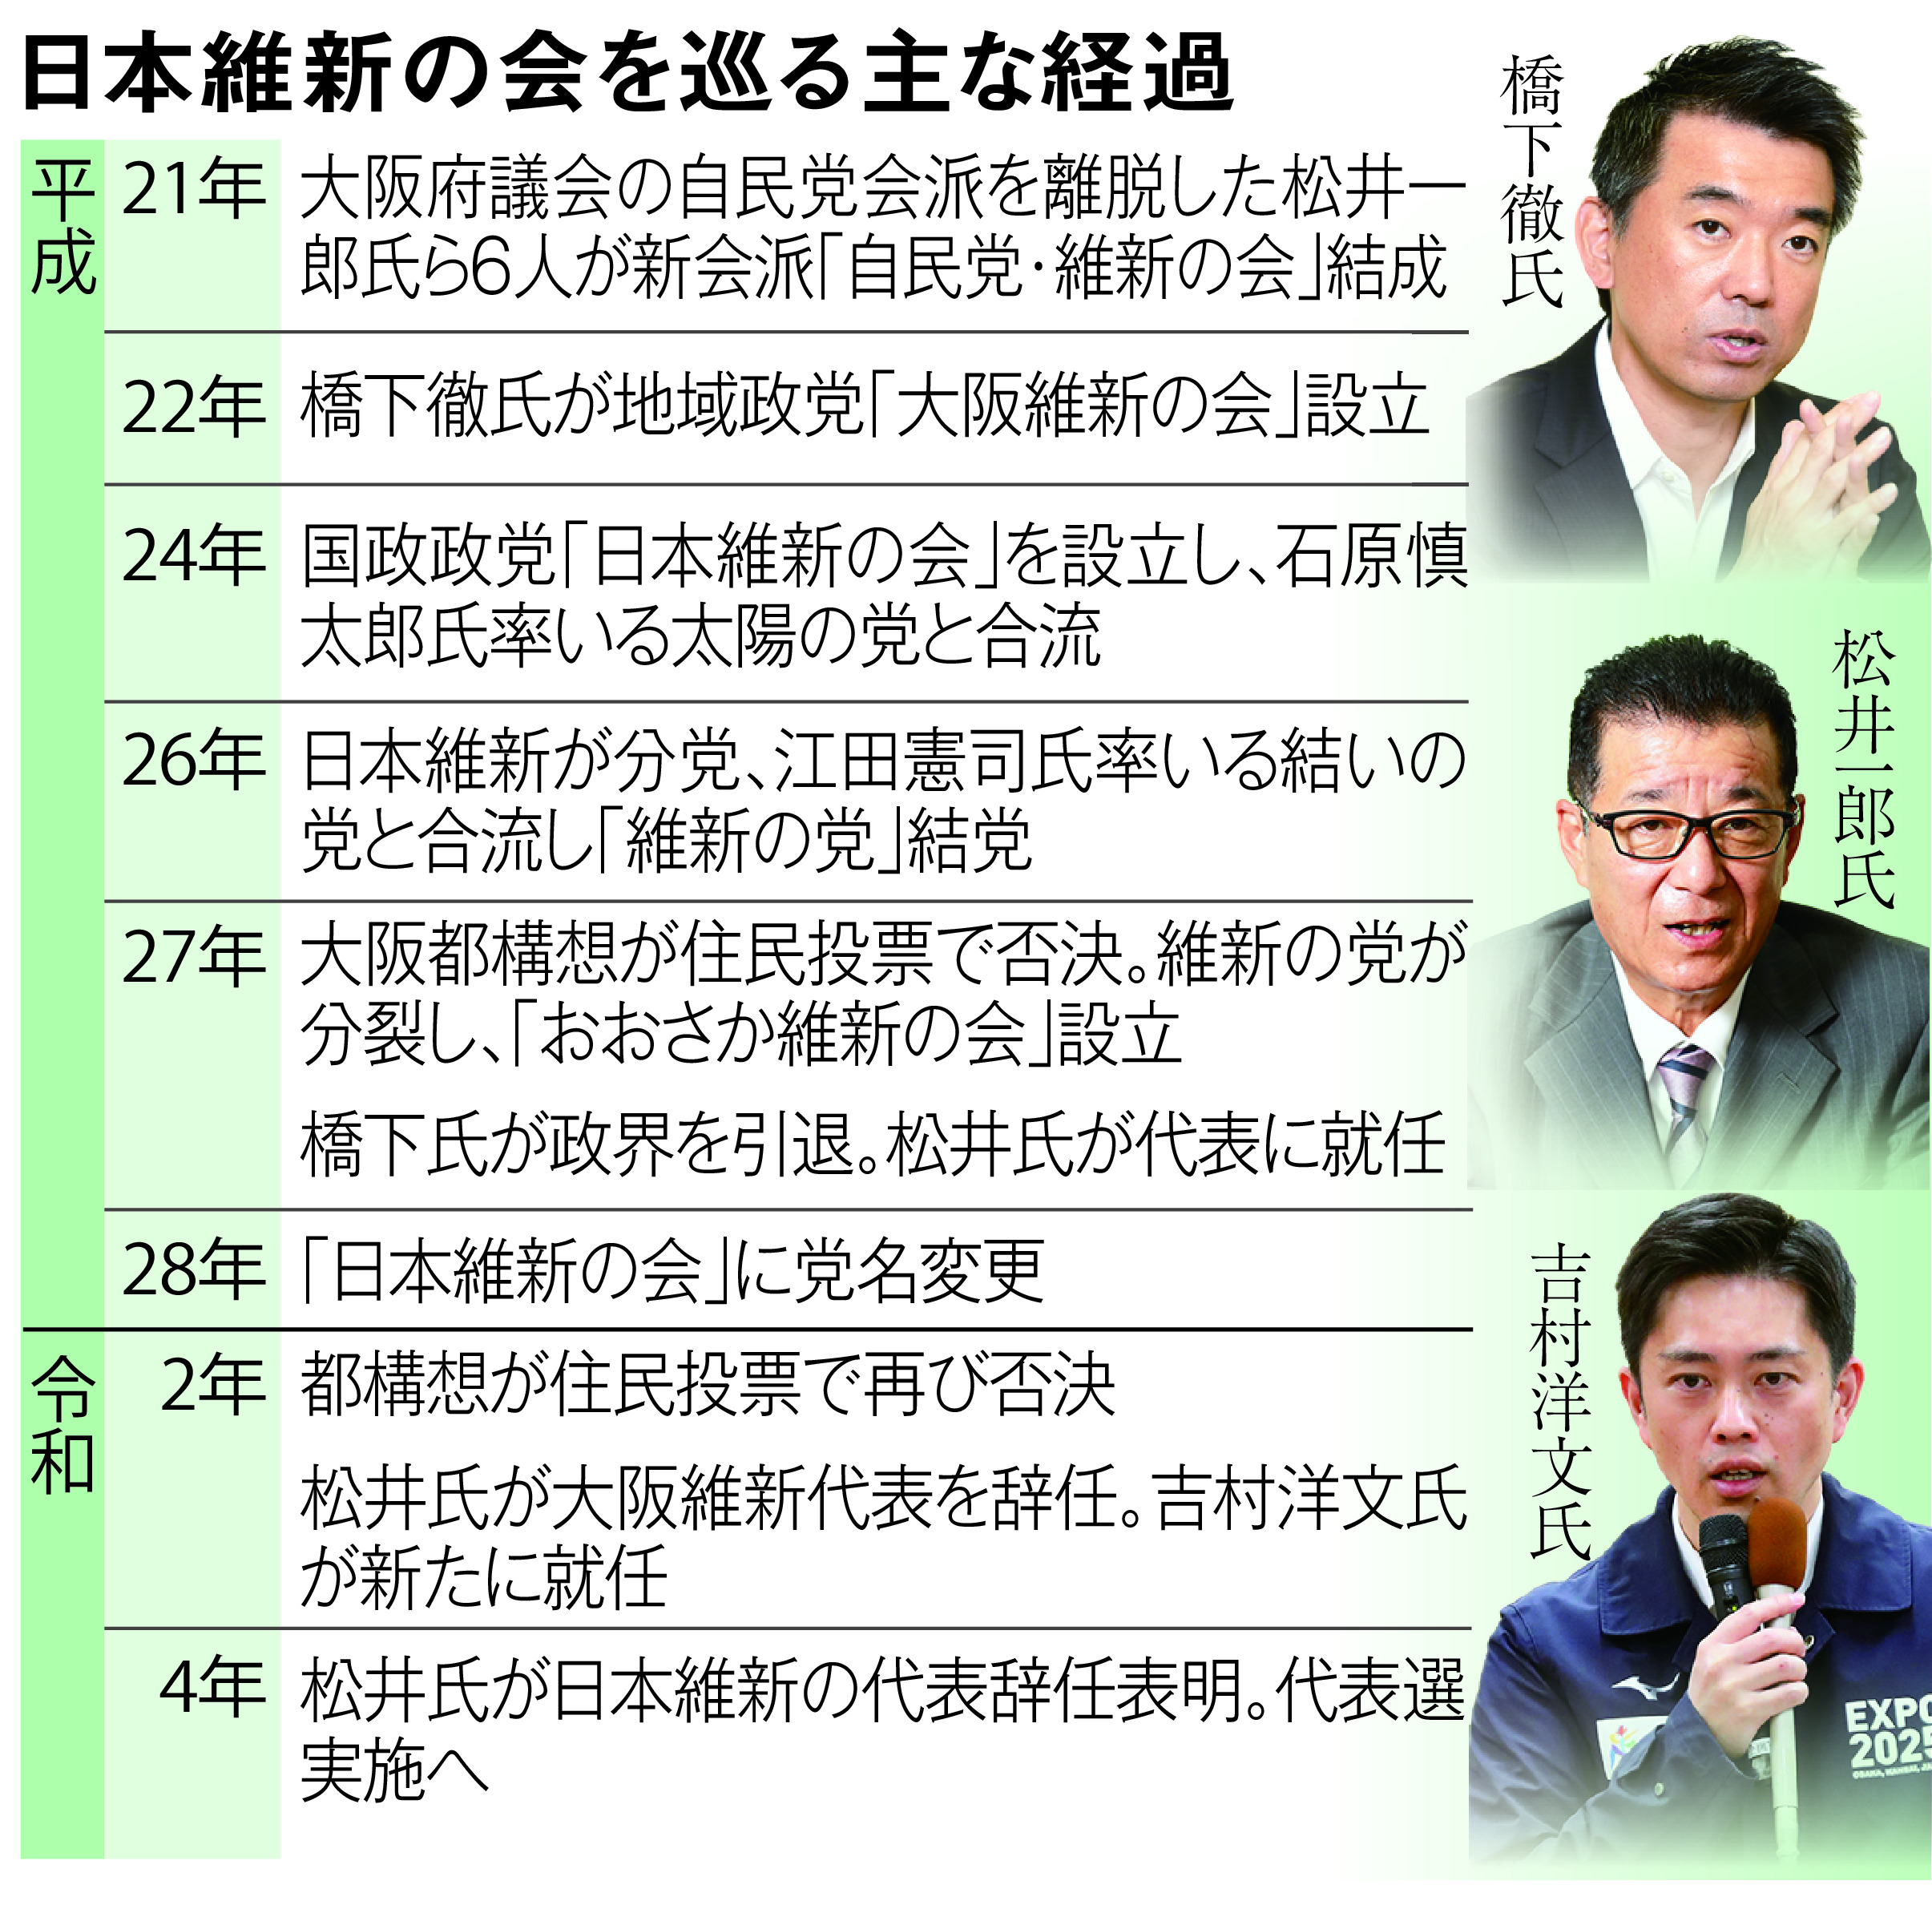 維新 ポスト松井 の行方 結党以来初の代表選へ 産経ニュース